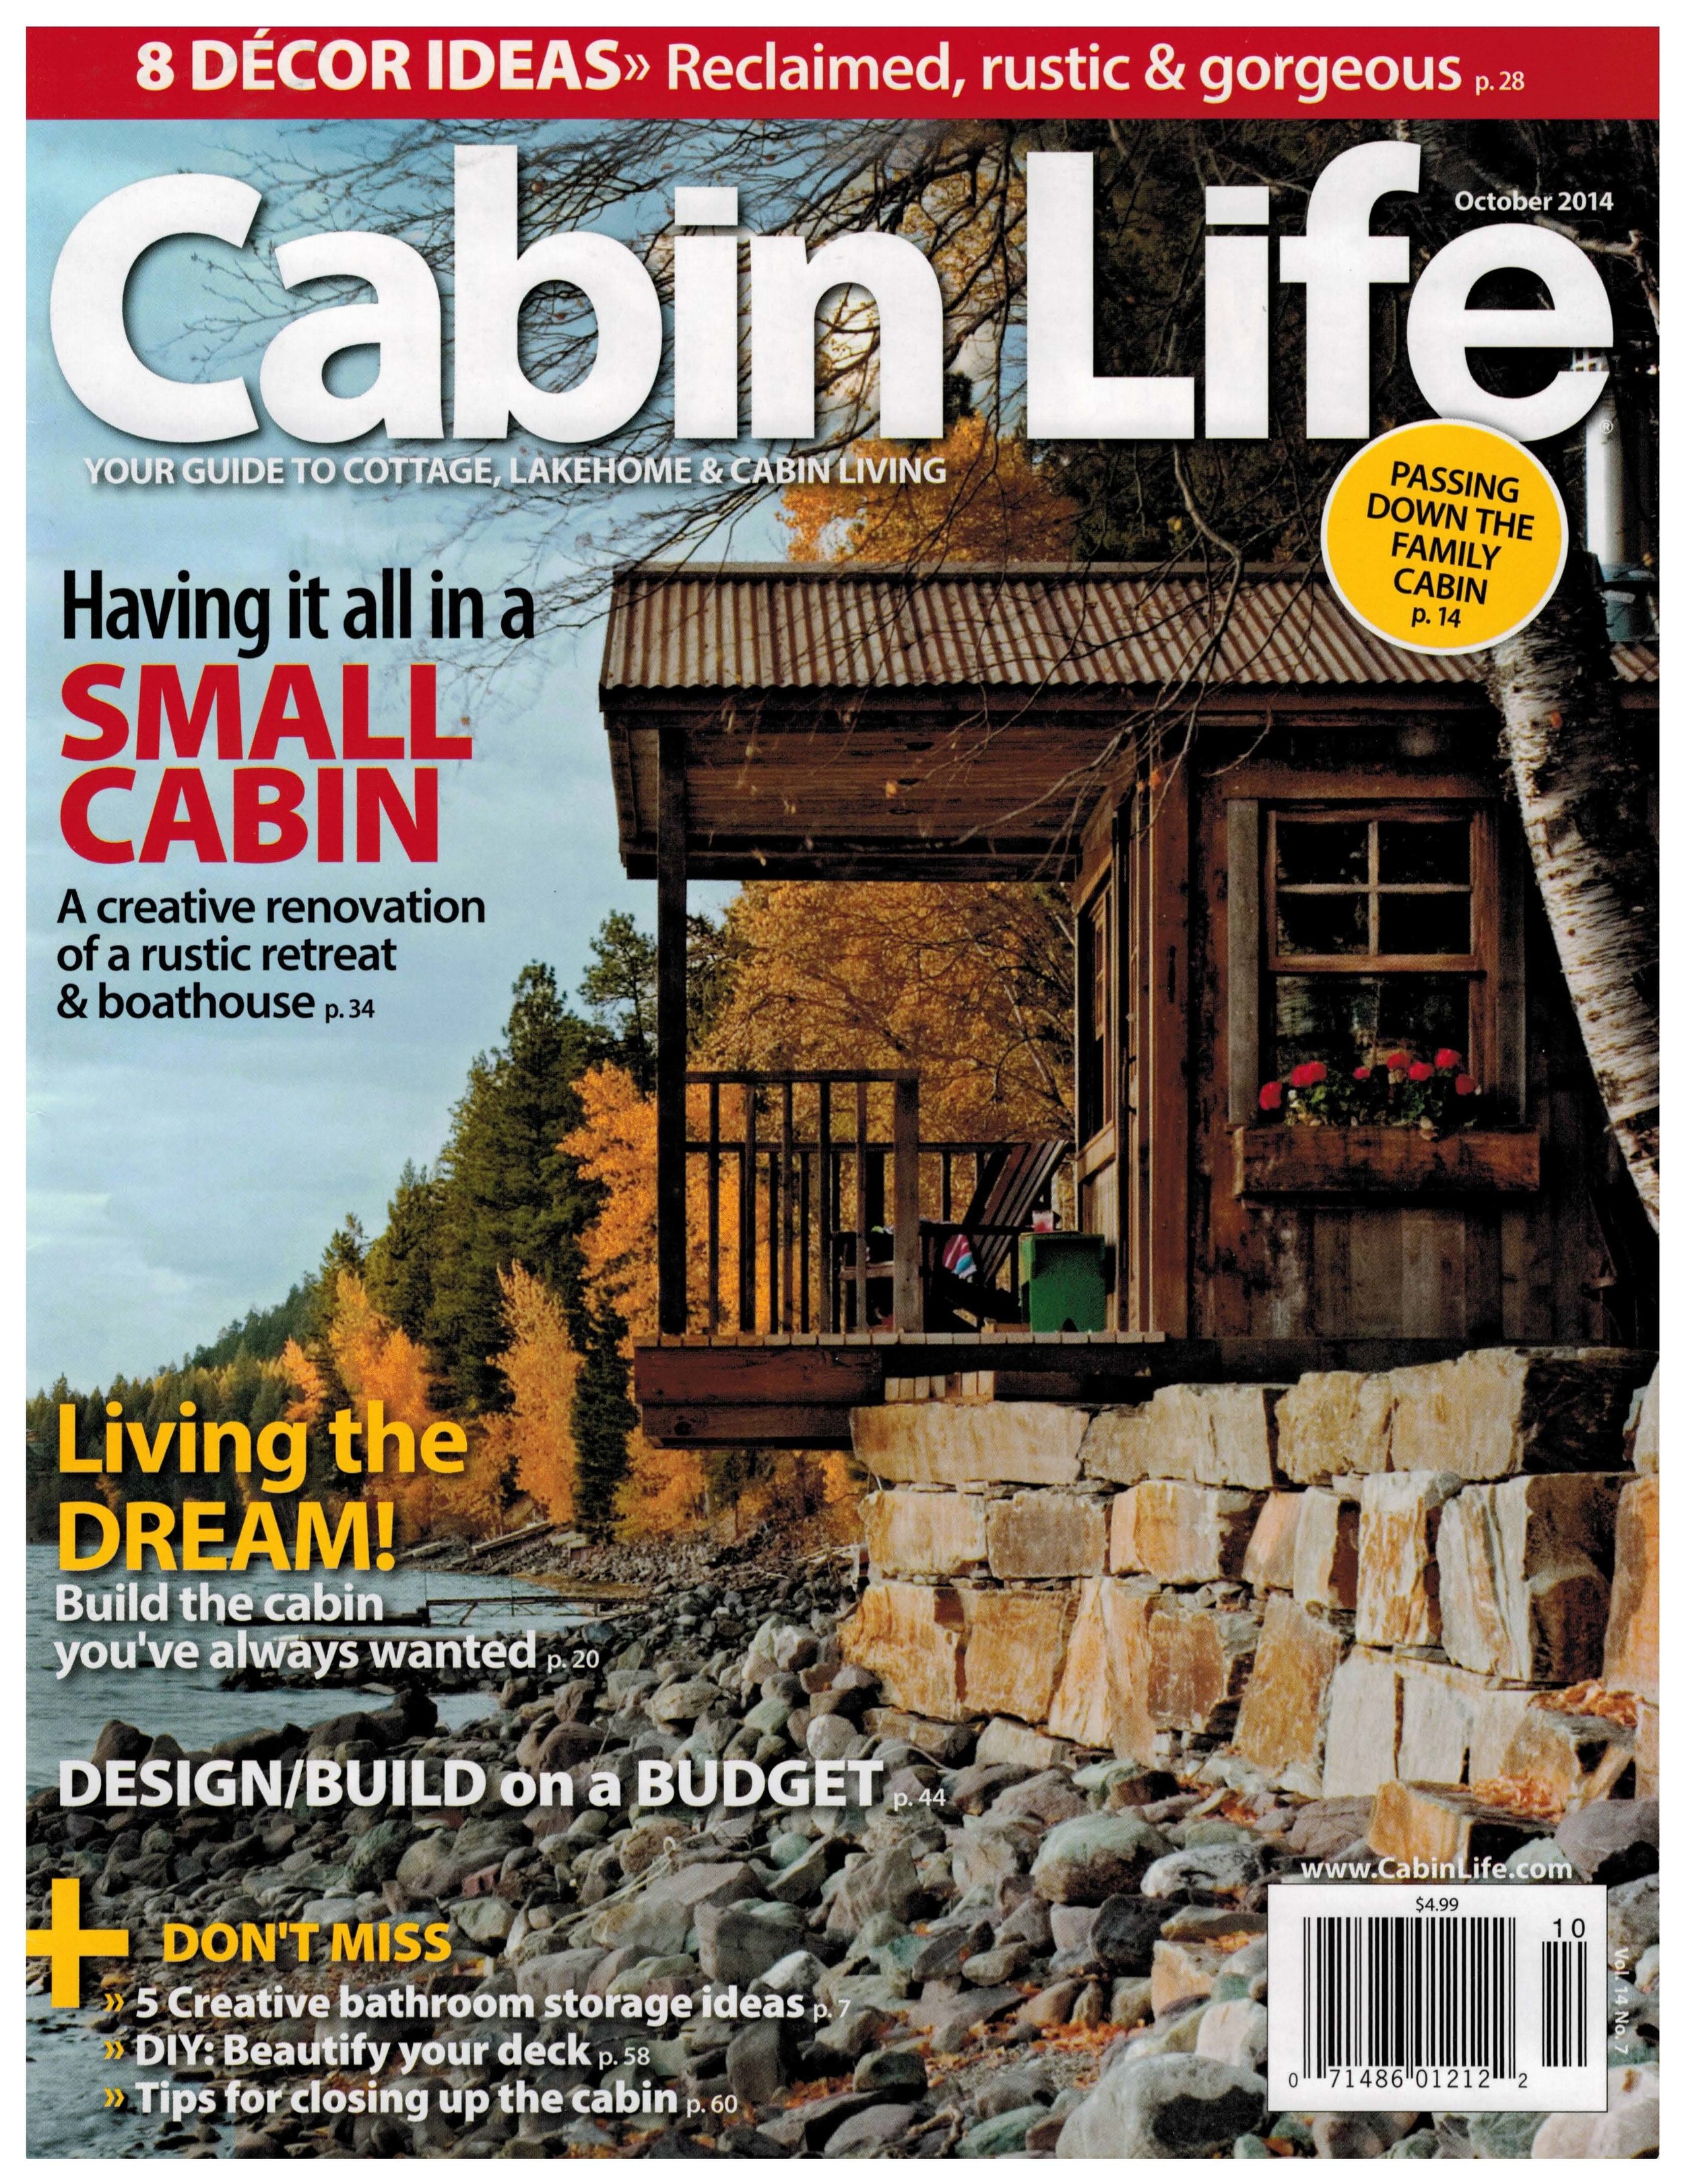 10 Cabin Life-Oct 2014.jpg